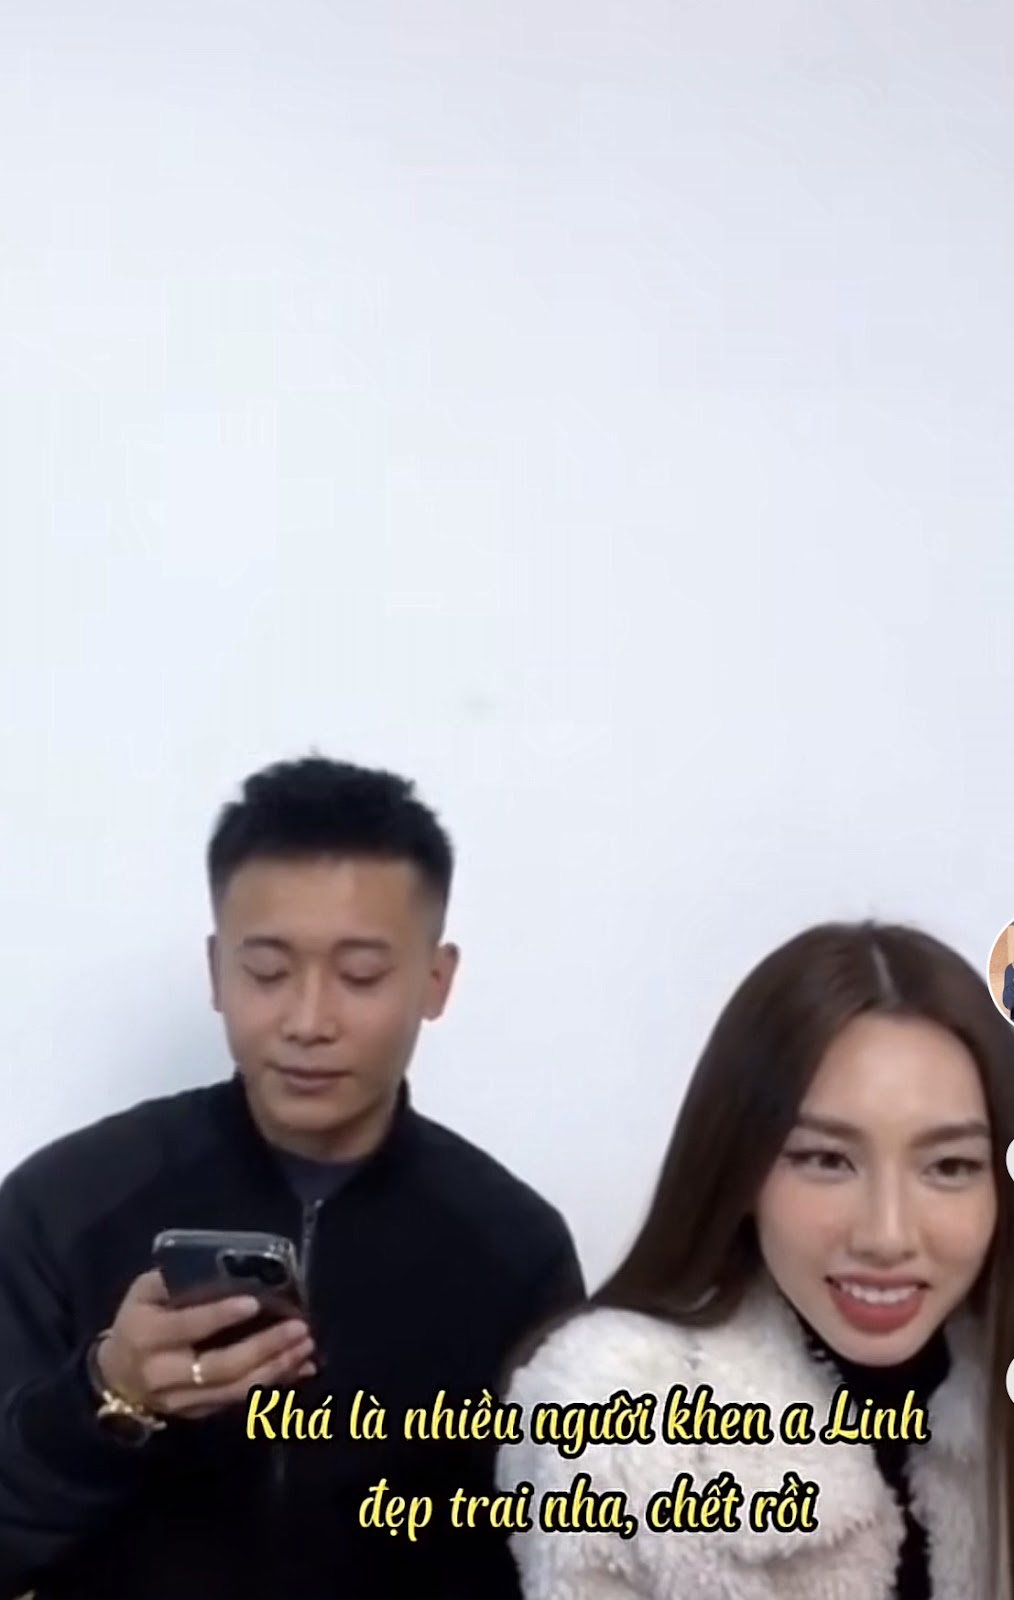 Thùy Tiên tỏ thái độ khi Quang Linh Vlog được fan nữ khen đẹp trai, chàng youtuber gặp biến căng - Hình 4